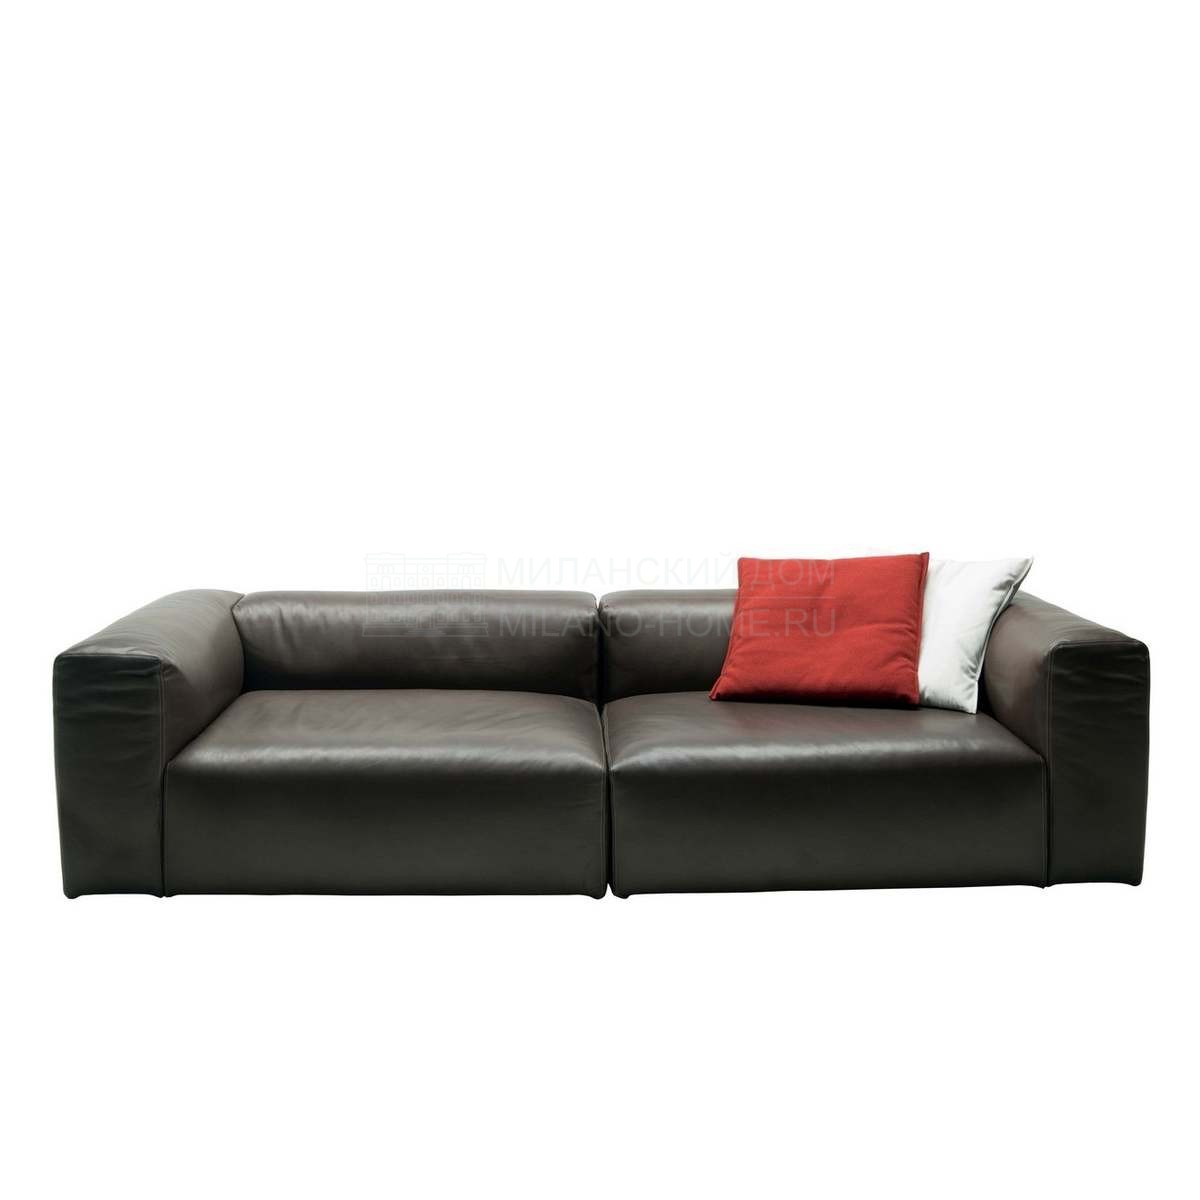 Прямой диван Oblong sofa straight leather из Италии фабрики CAPPELLINI